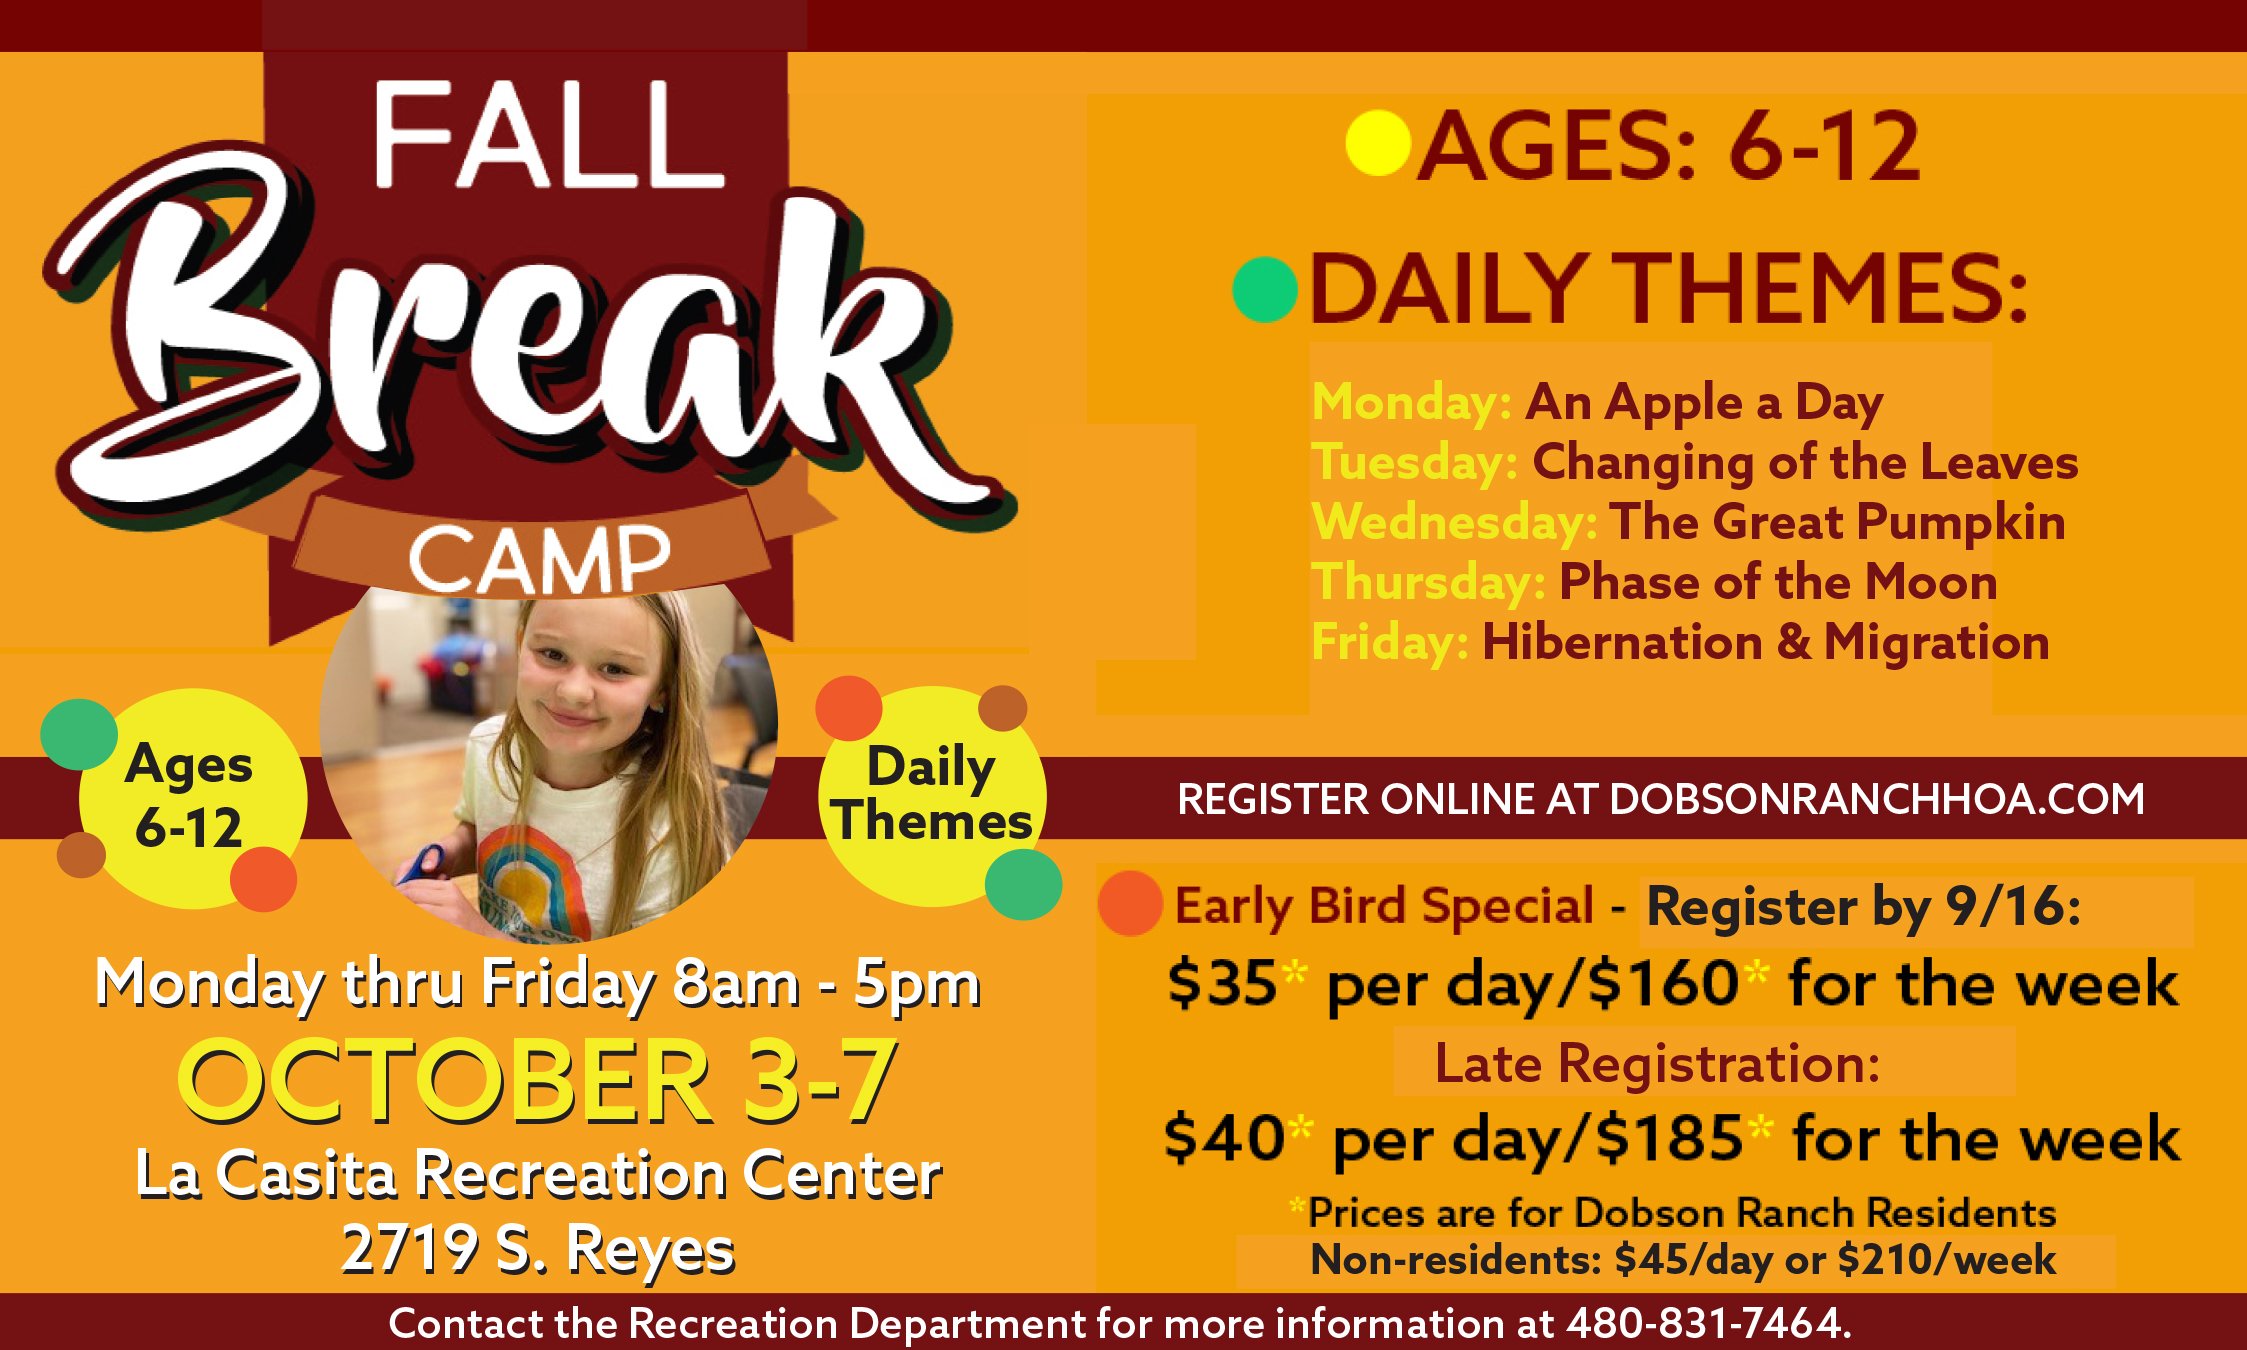 Fall Break Camp @ La Casita Recreation Center